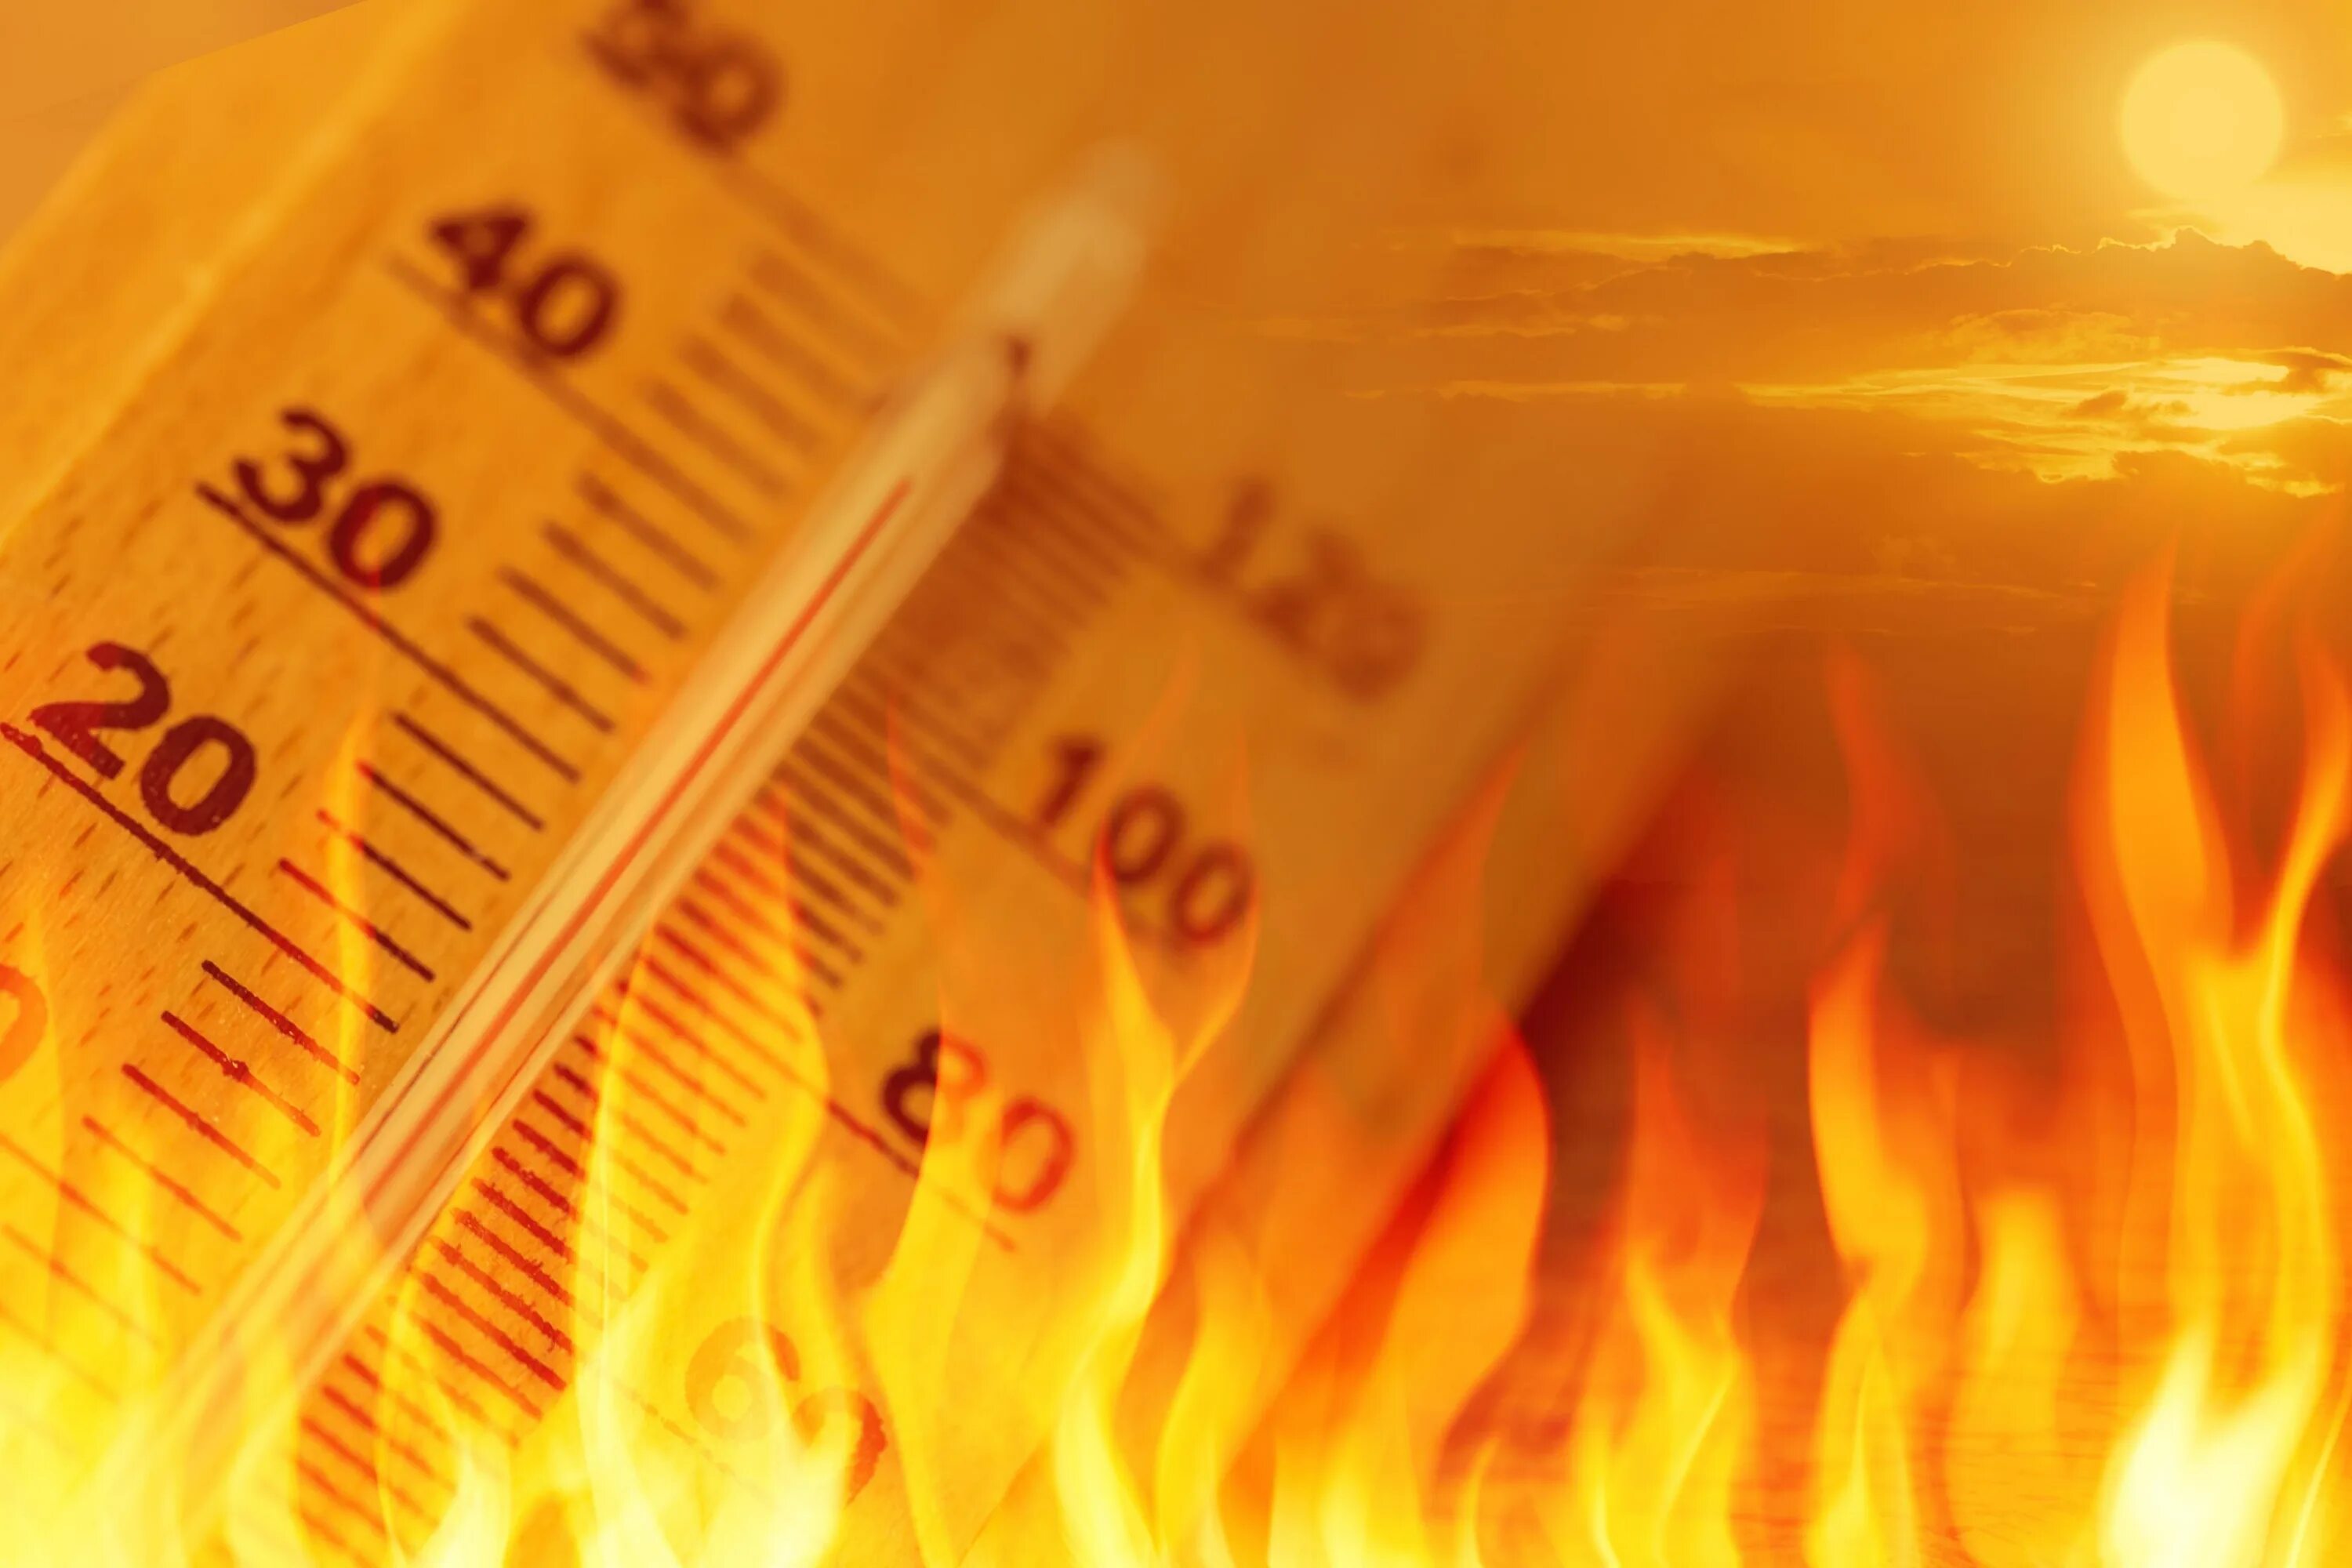 Повышение температуры при пожаре